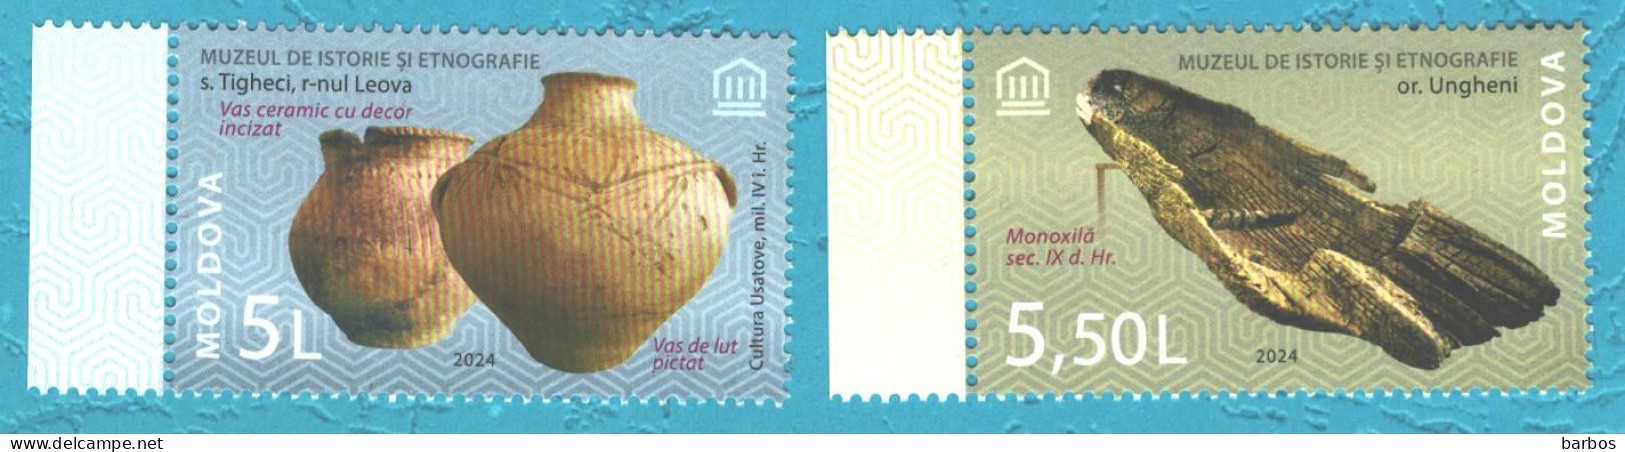 Moldova , 2024 , From The Museums’ Patrimony, 2 V., MNH - Moldova